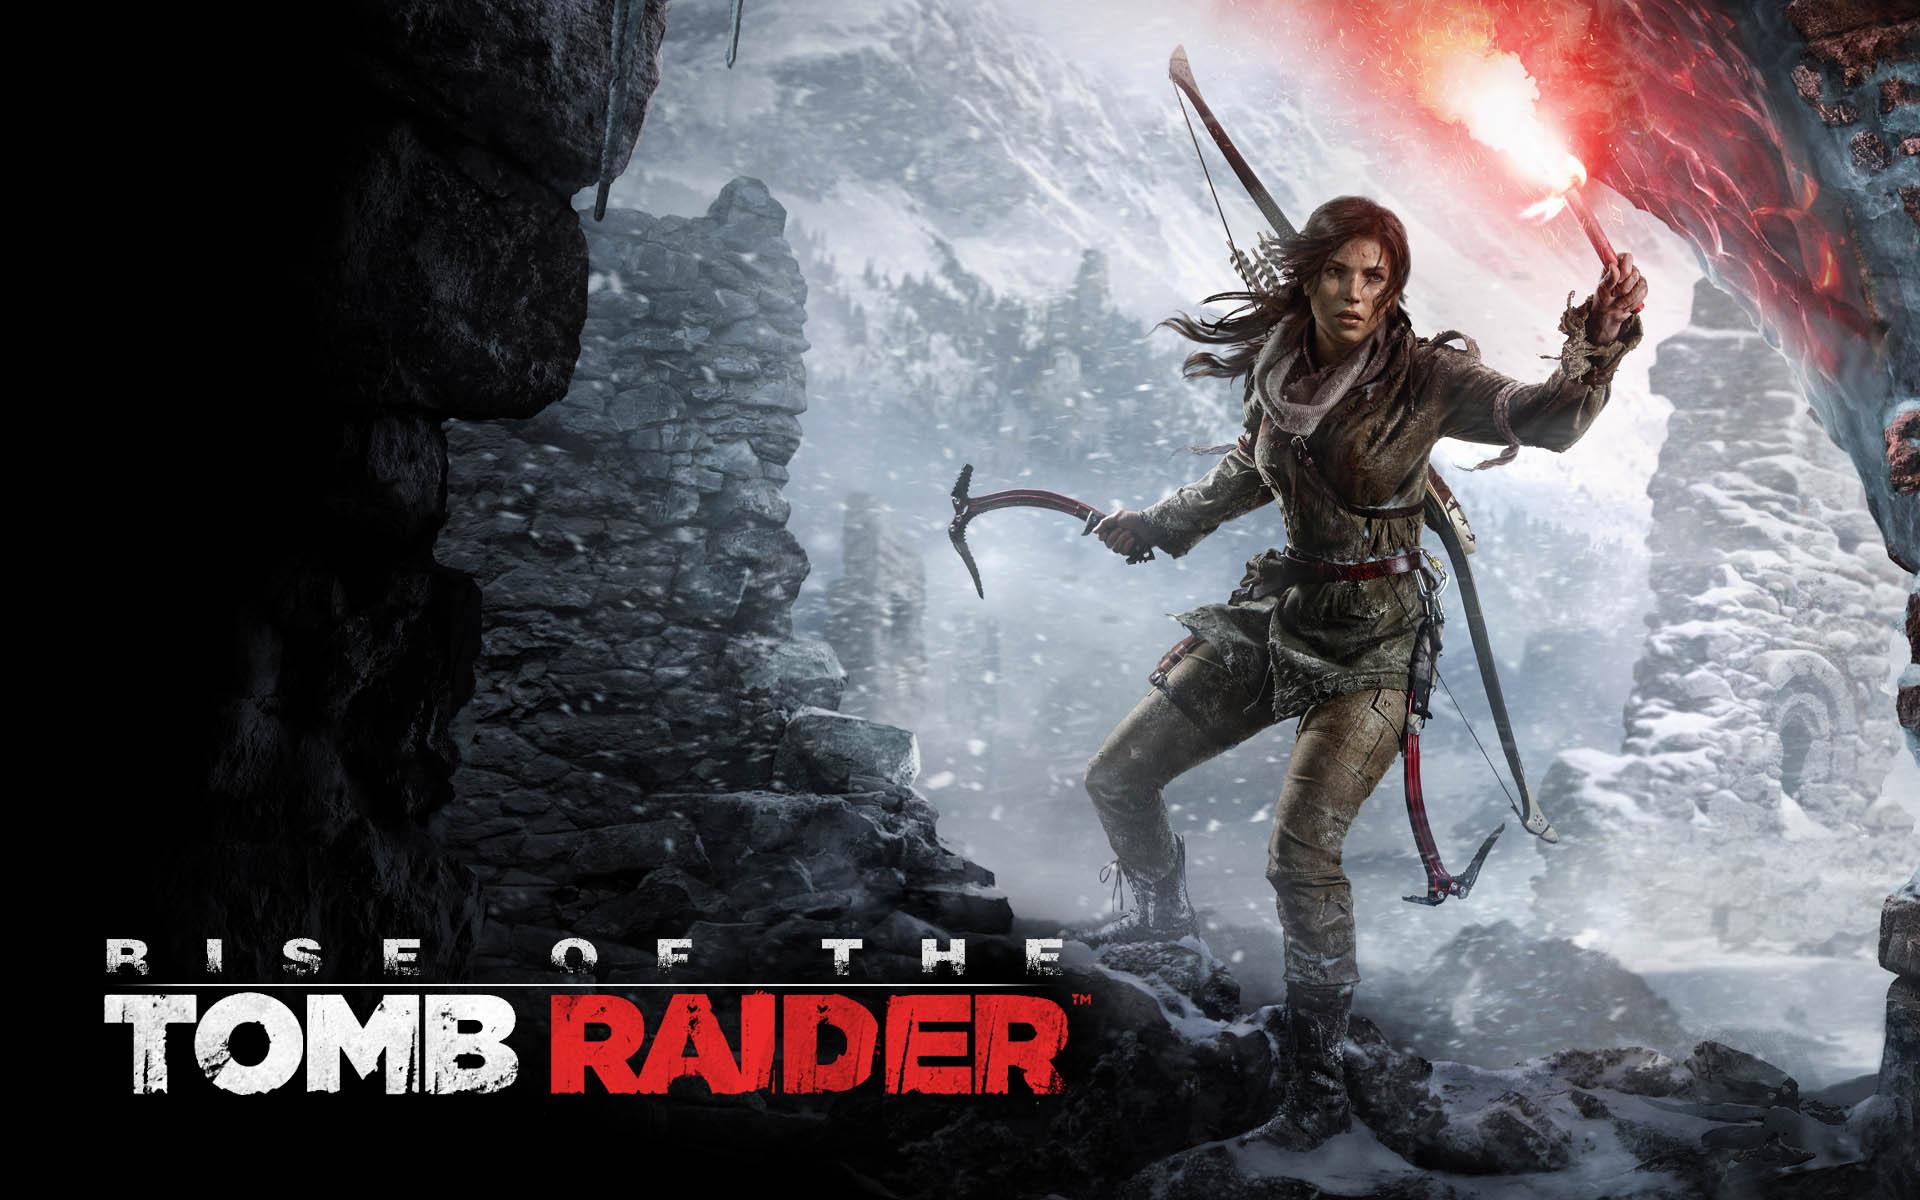 Rise of the Tomb Raider saldría en PS4 en octubre